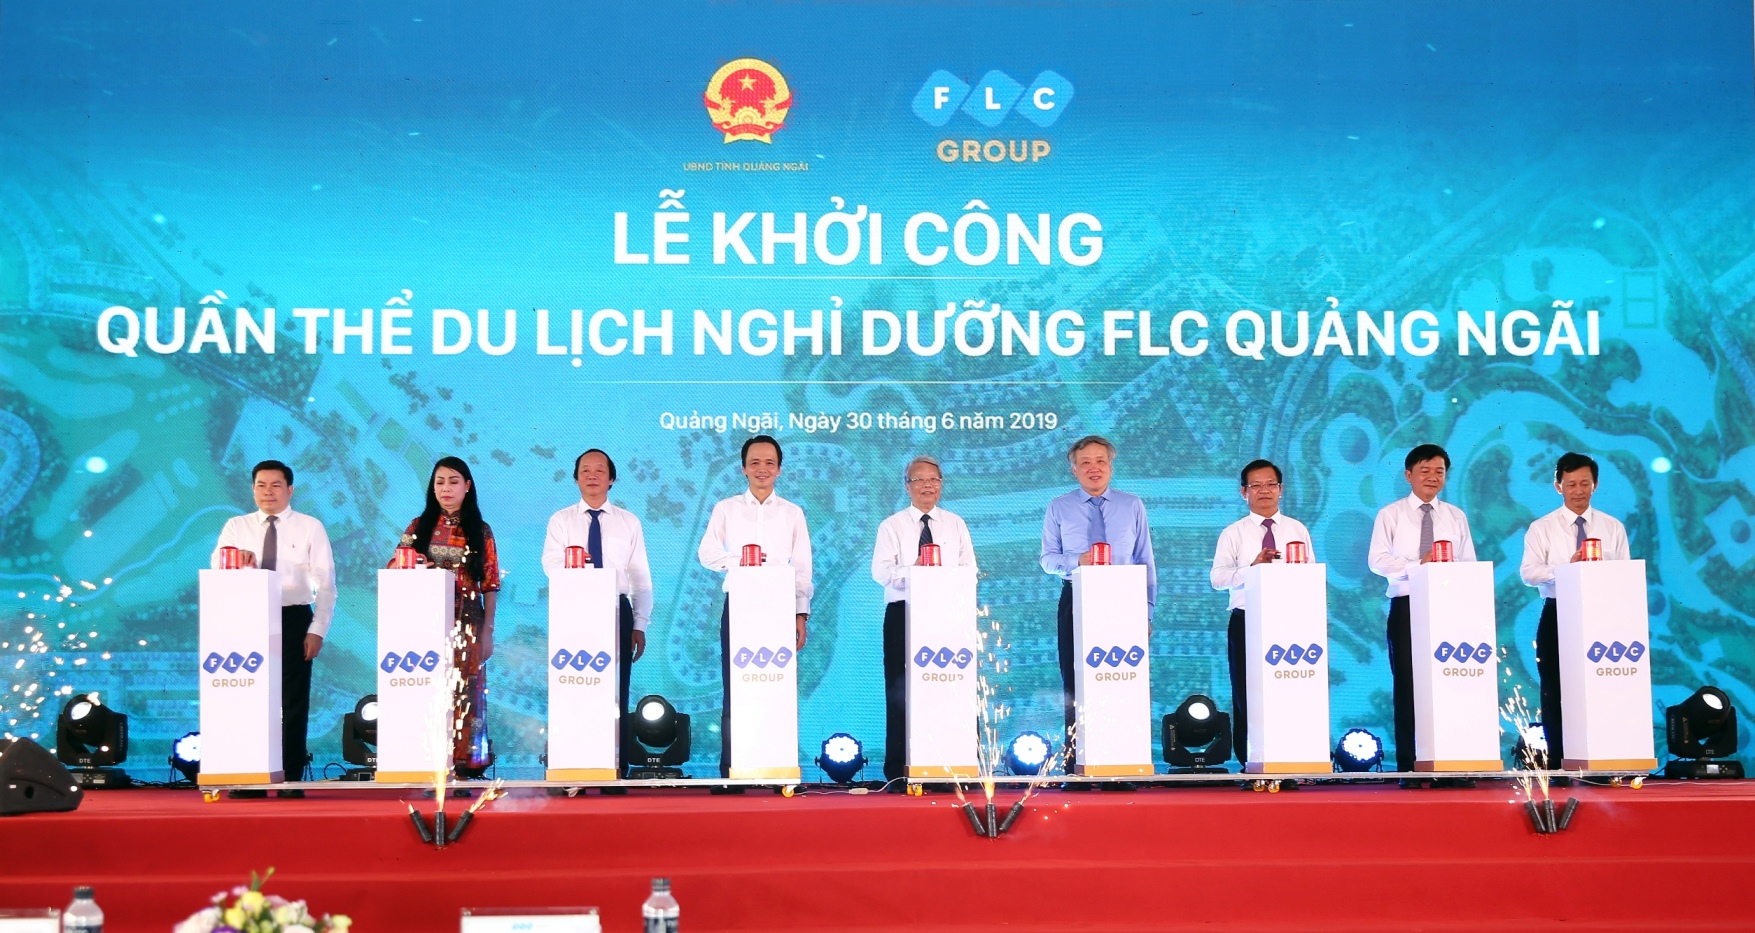 Tập đoàn FLC khởi công quần thể nghỉ dưỡng có quy mô 1.026 ha tại Quảng Ngãi